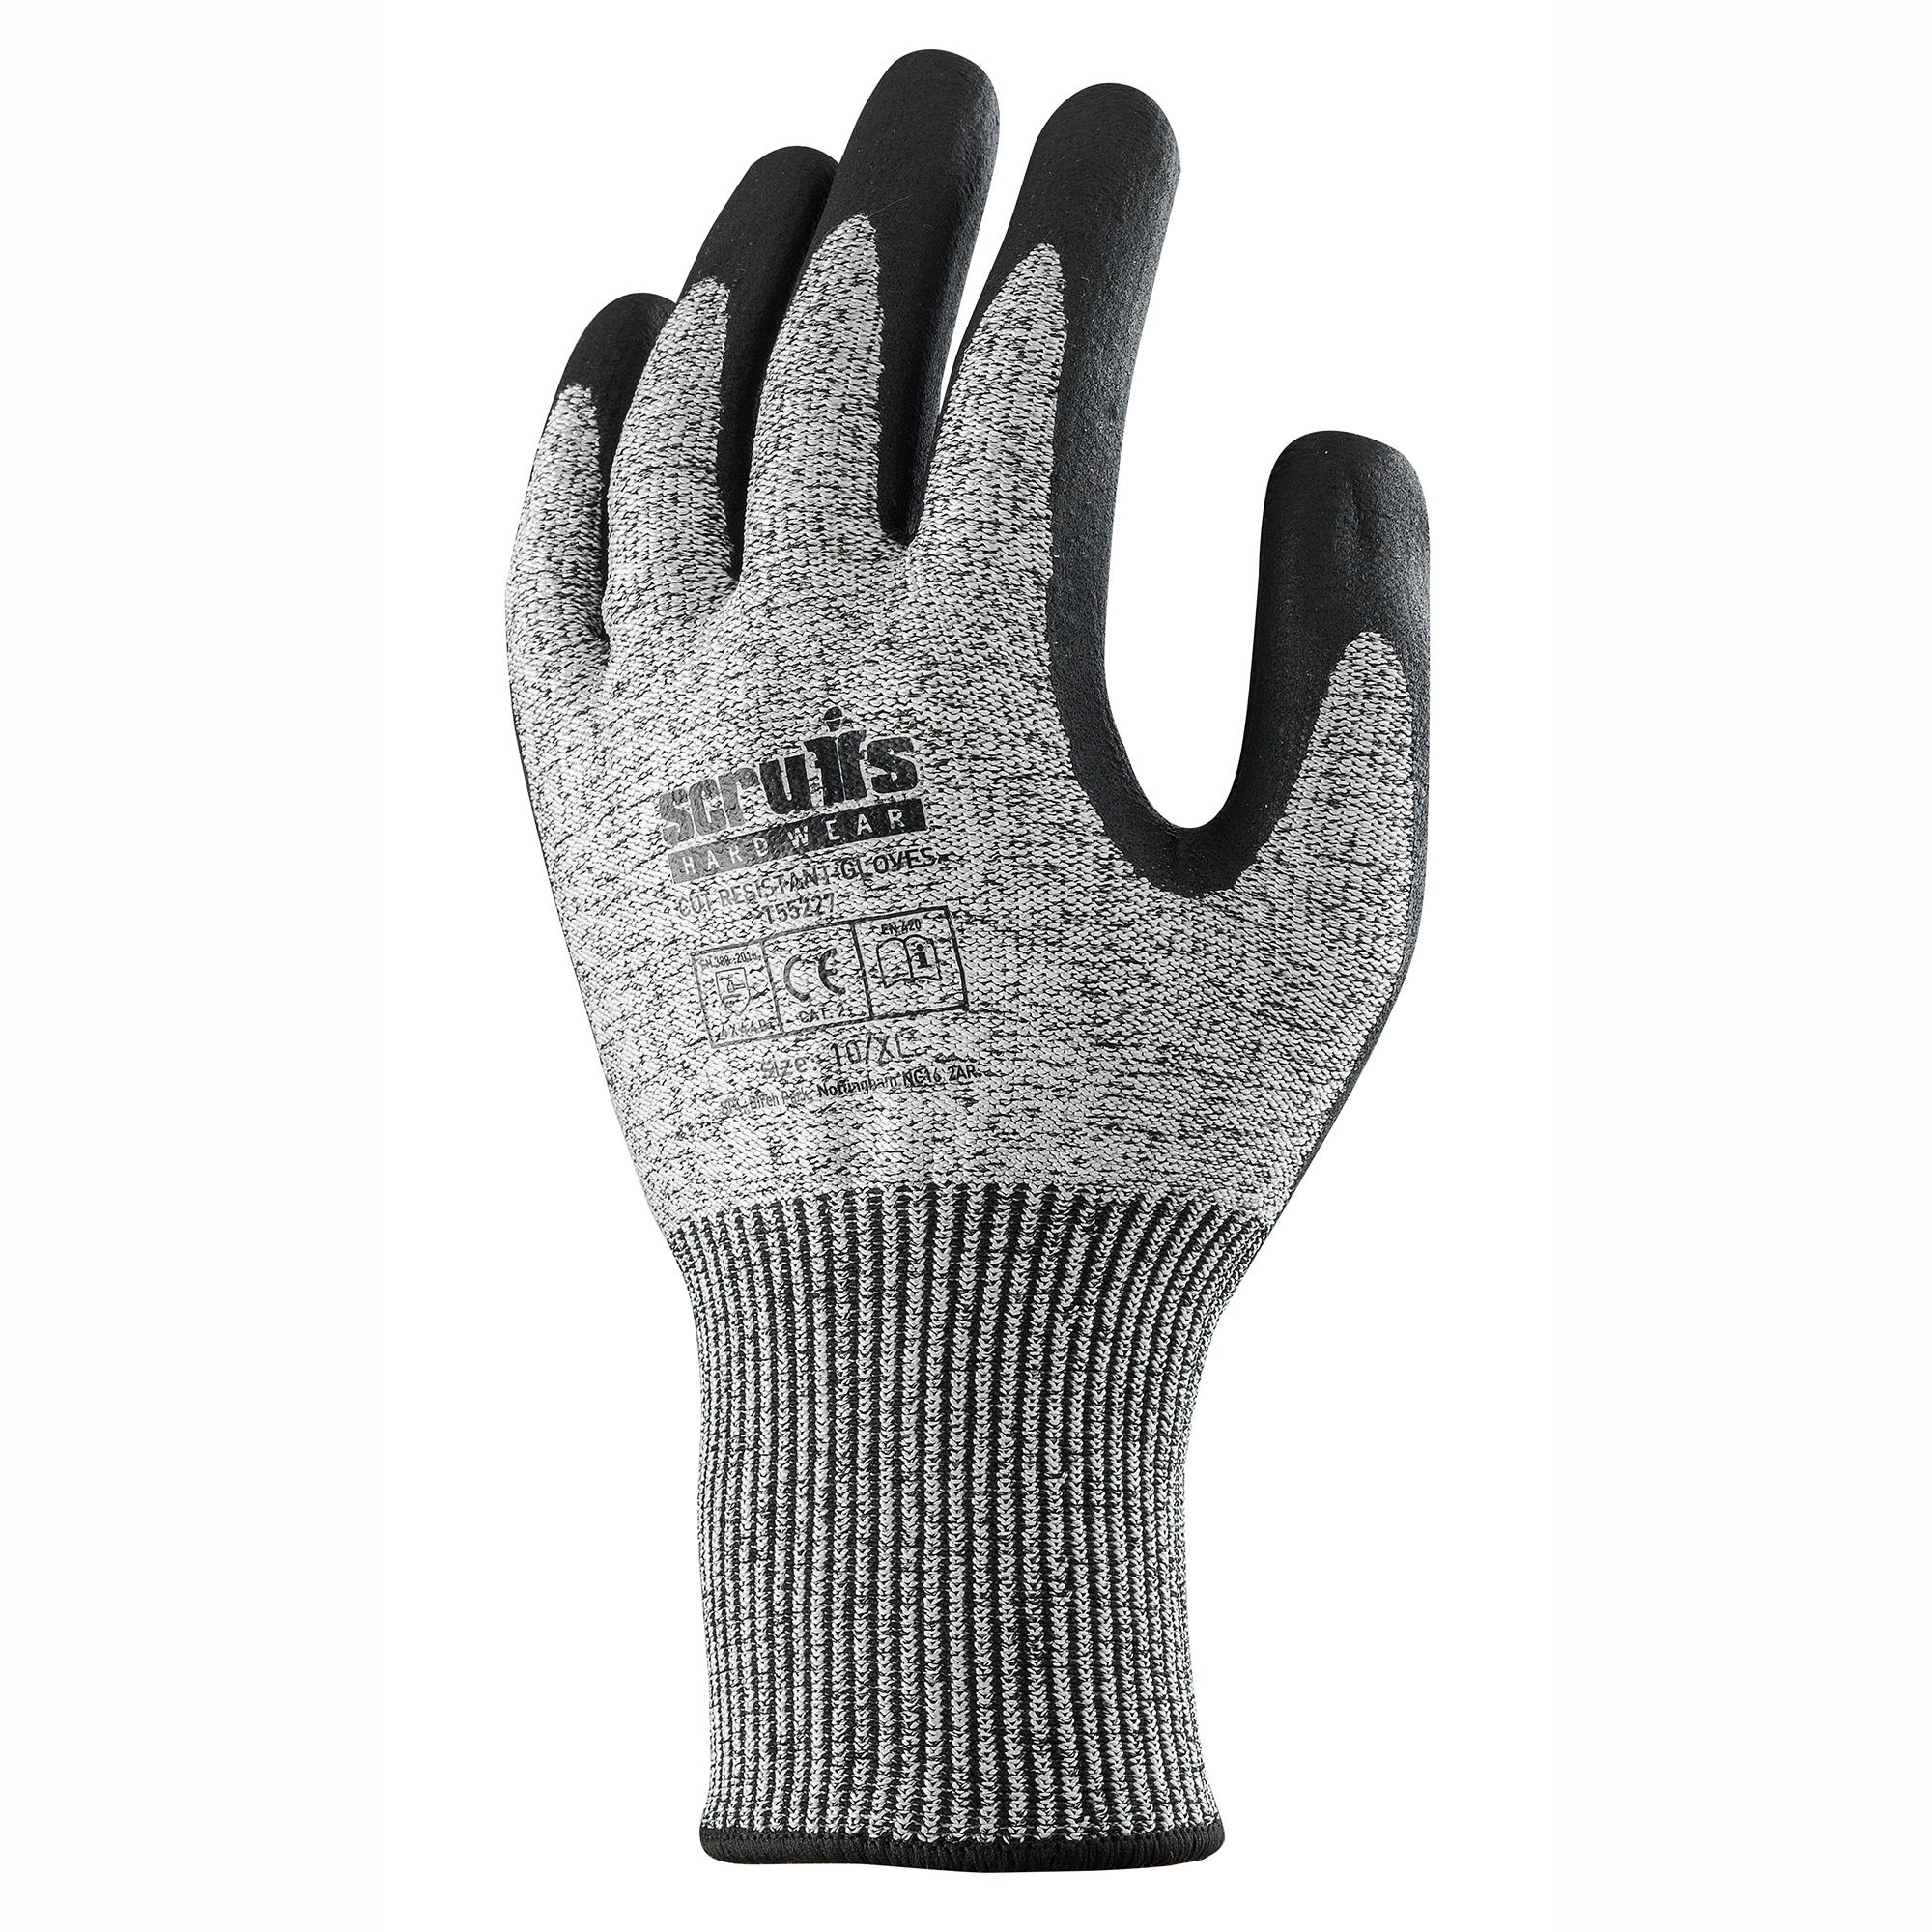 Scruffs Cut Resistant Gloves